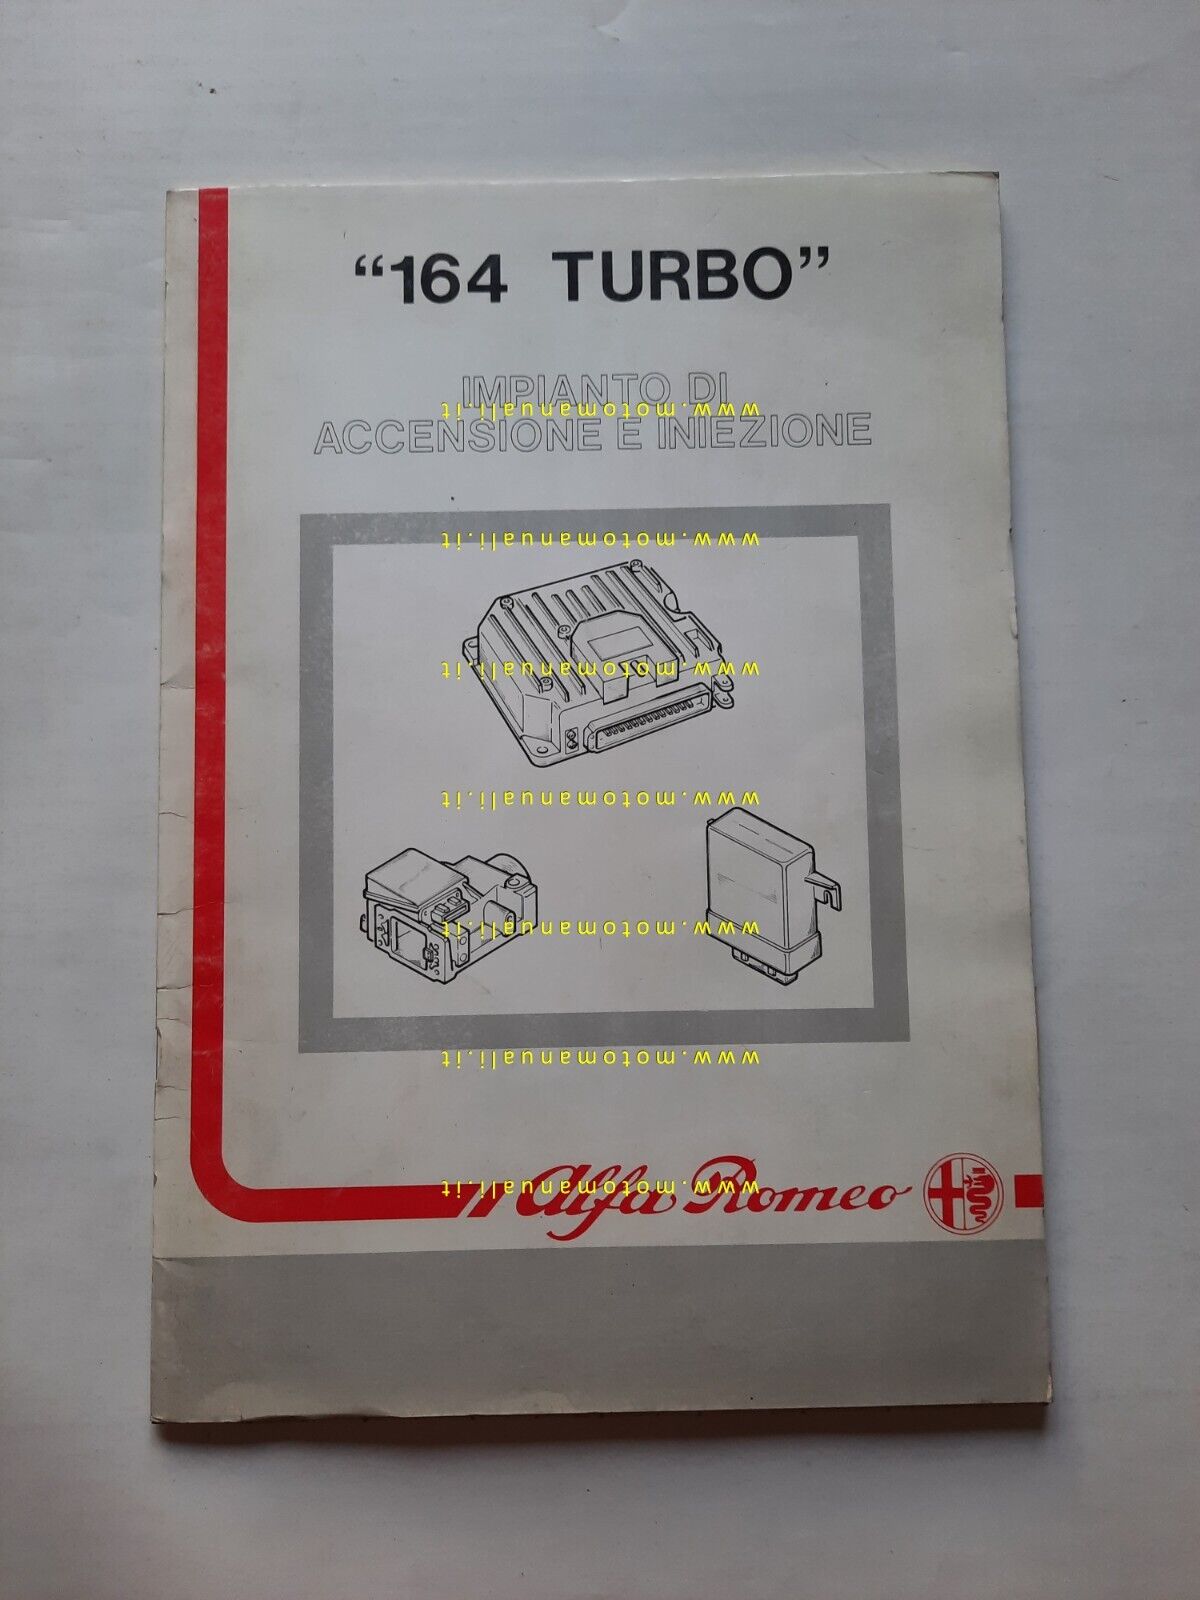 Alfa Romeo 164 Turbo 1988 manuale officina impianto iniezione accensione 